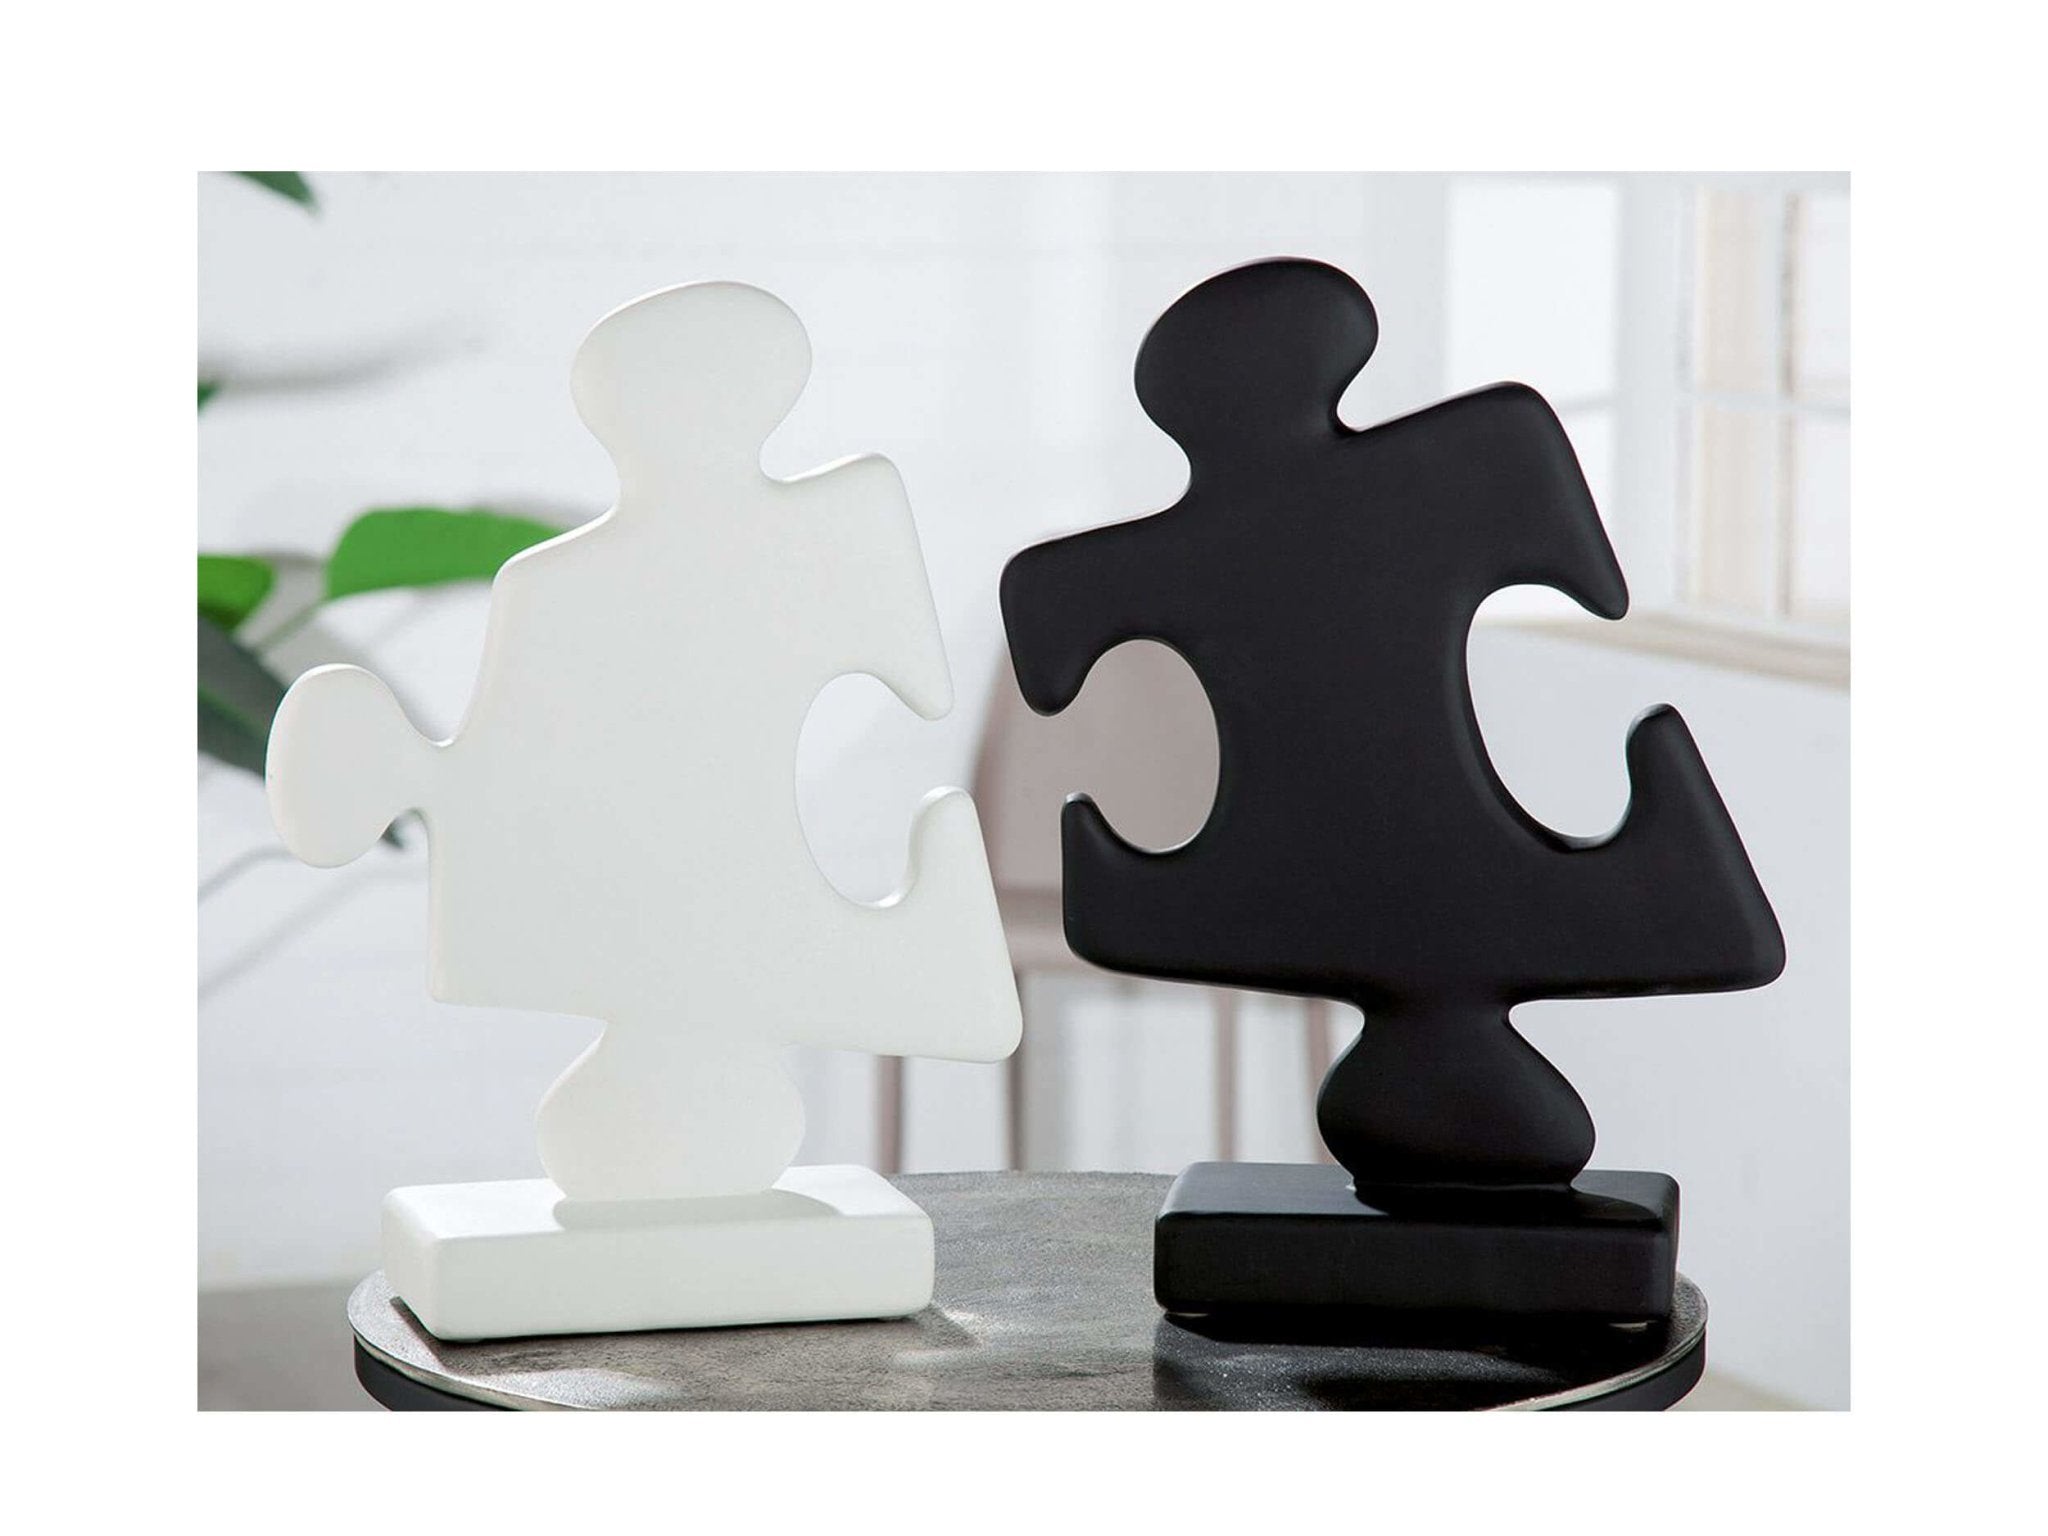 Decoratieve puzzelstukken verkrijgbaar in wit en zwart